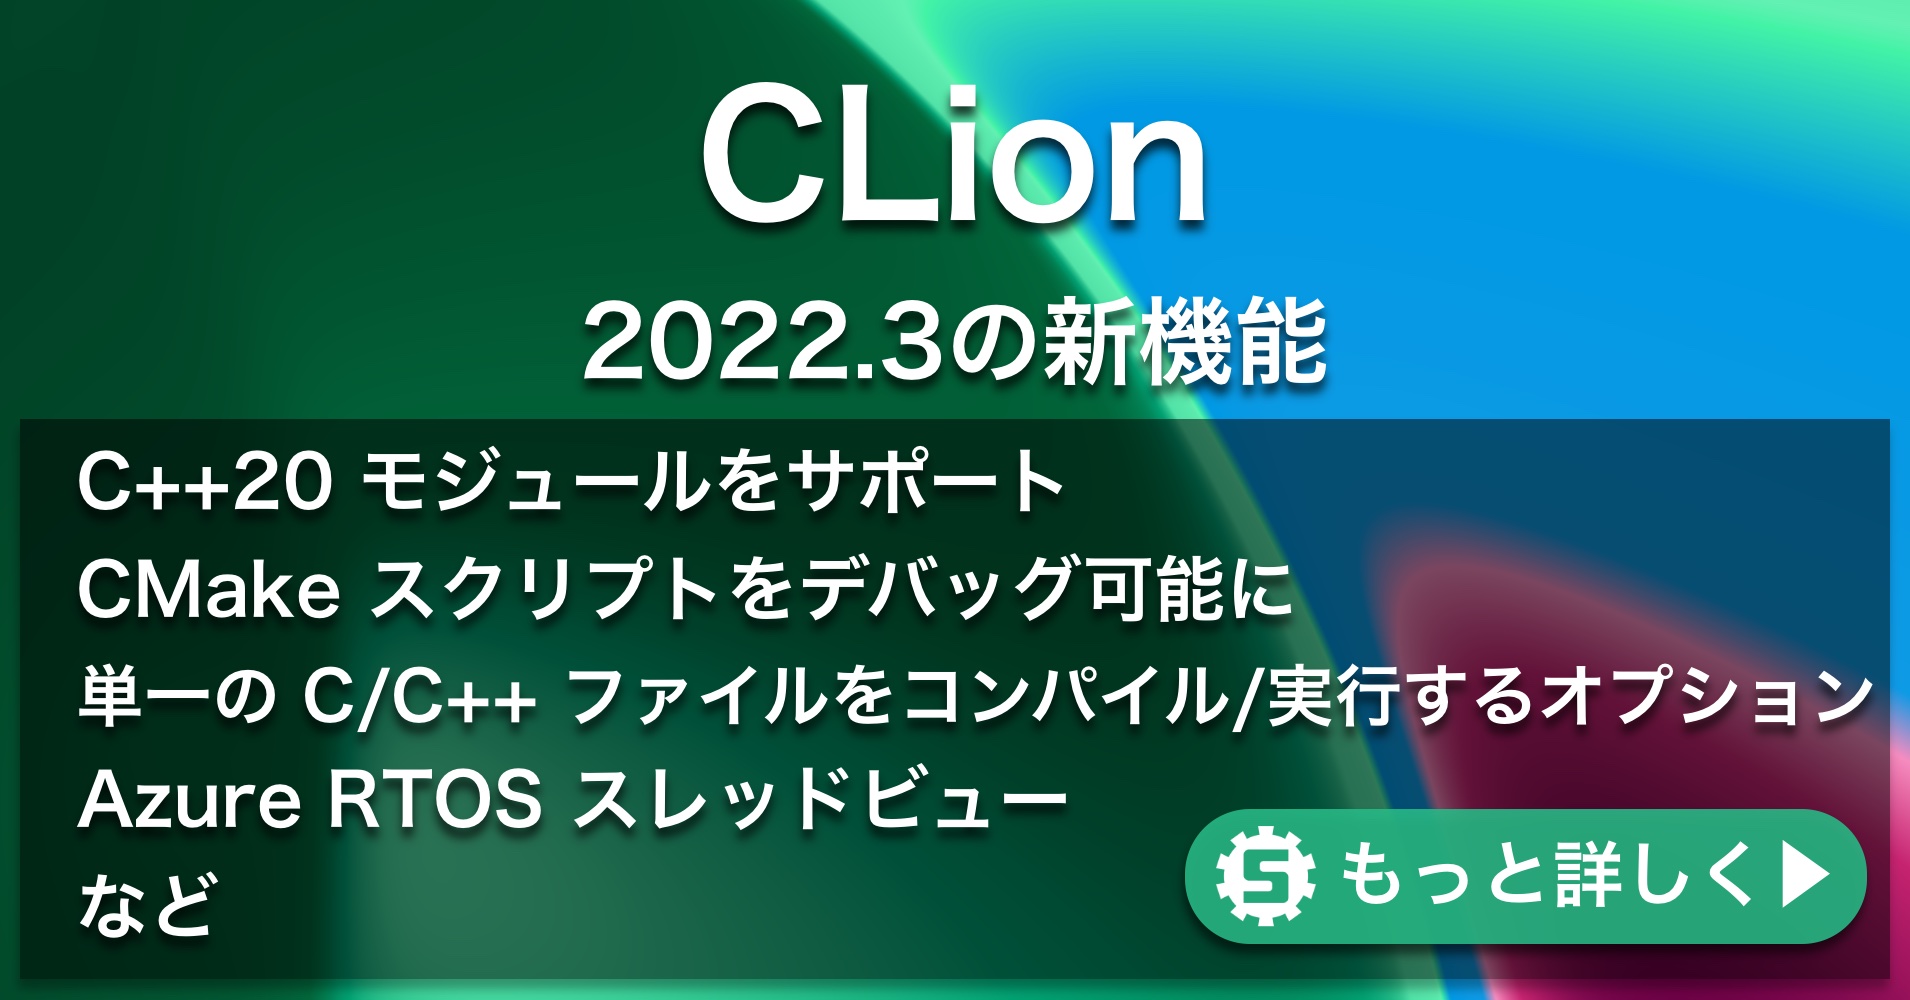 CLion2022.3の新機能